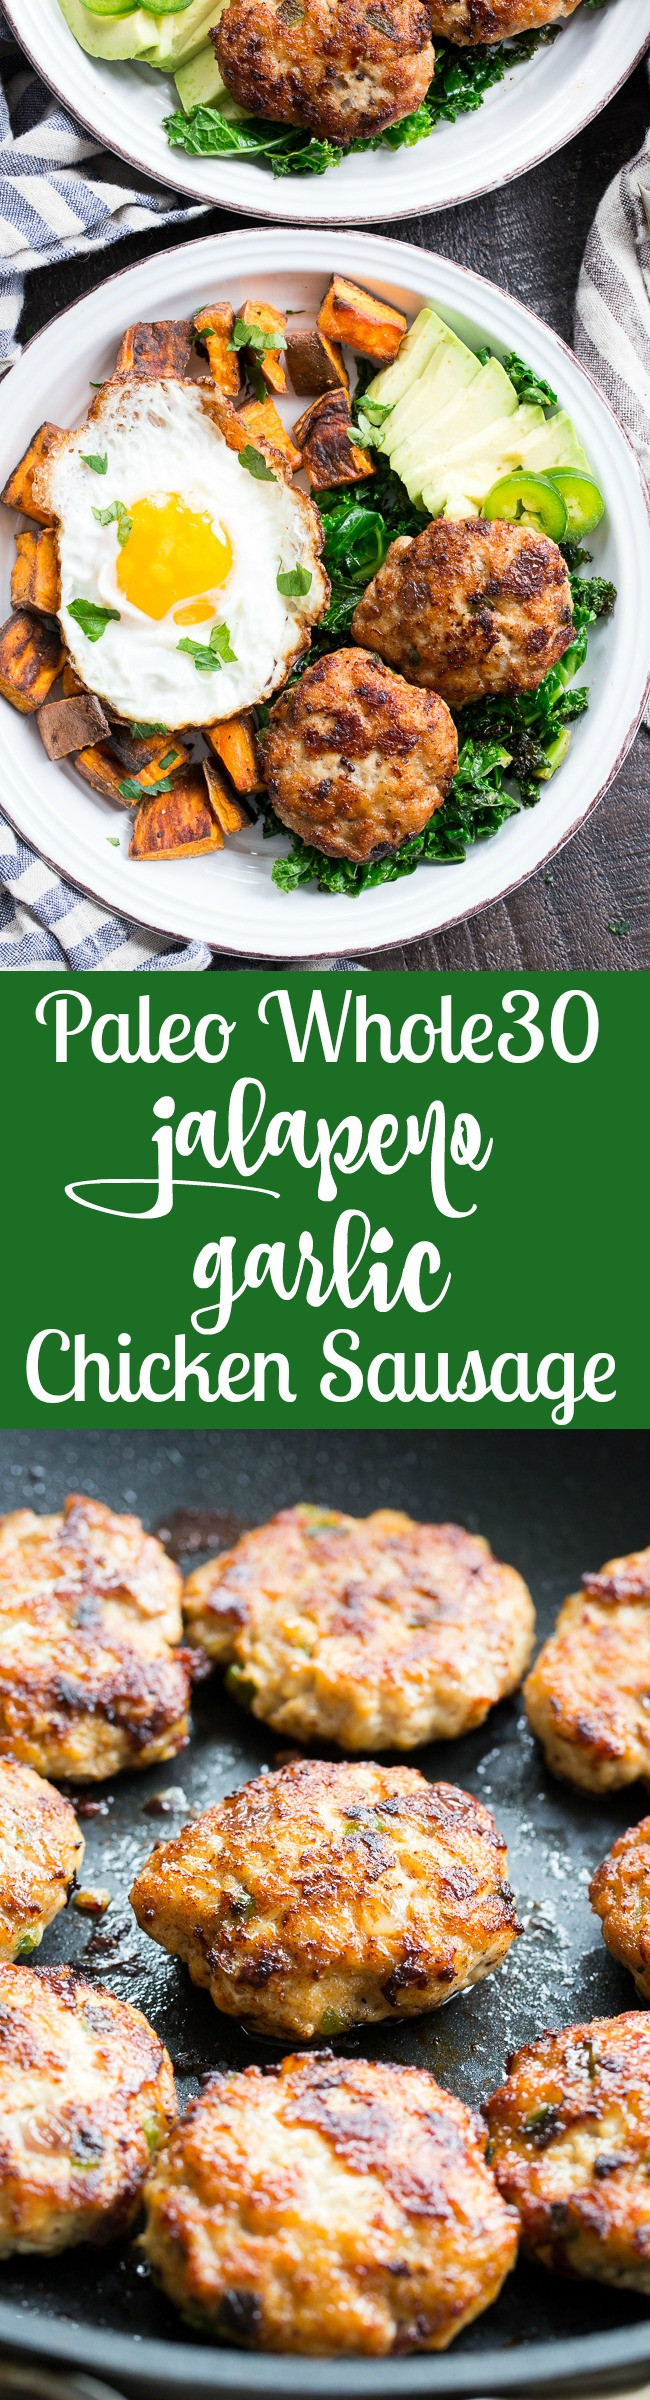 Paleo Chicken Sausage Recipes
 Garlic Jalapeno Chicken Sausage Patties Paleo Whole30